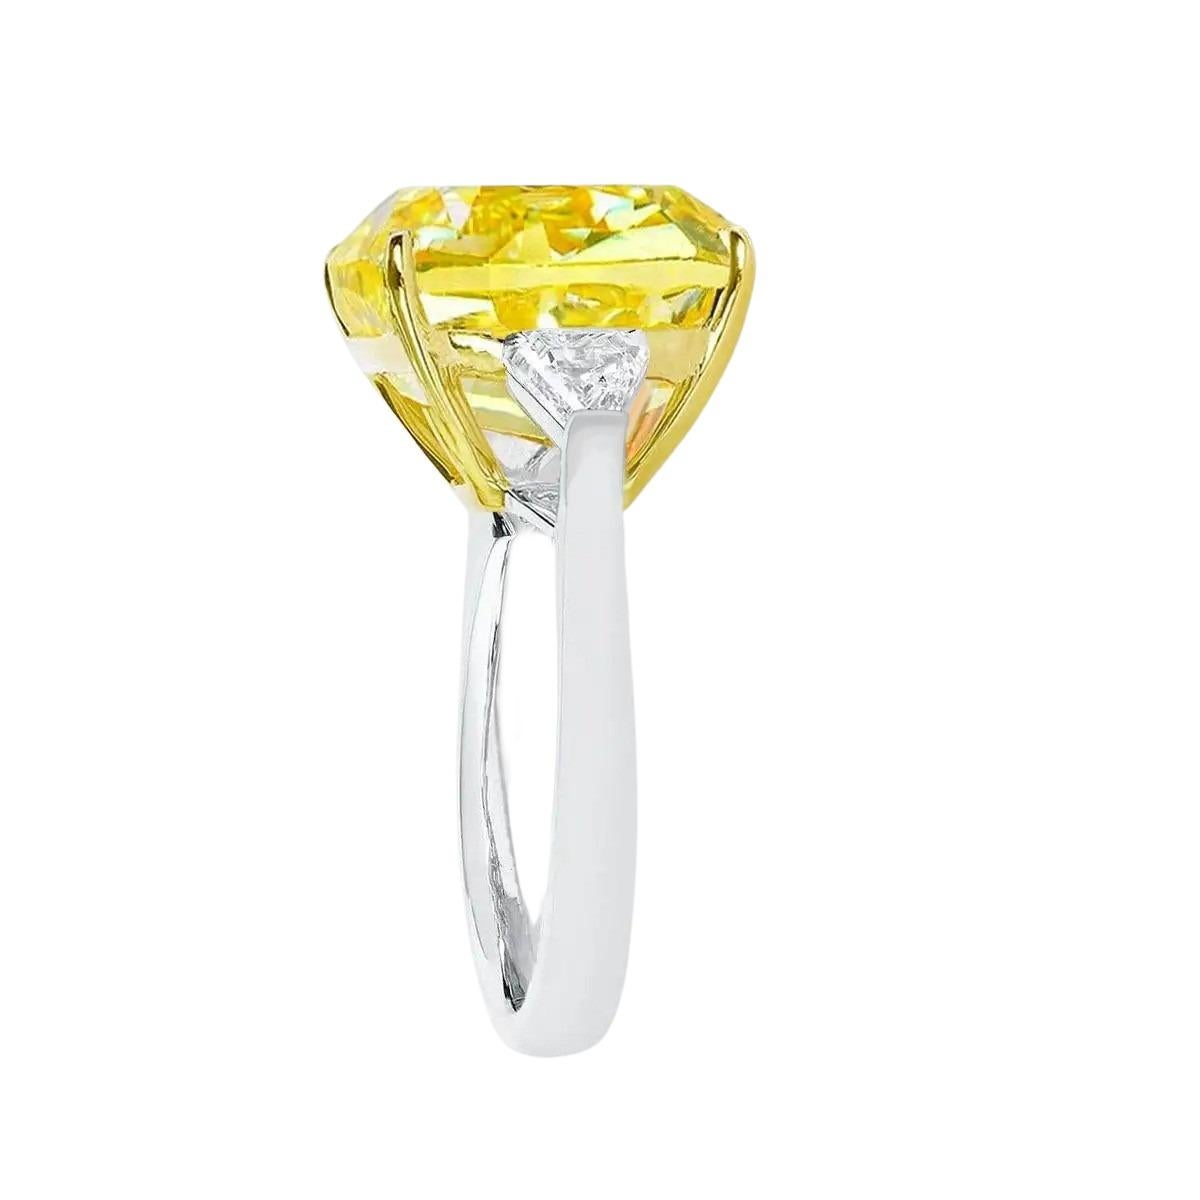 Solitaire exquis fantaisie  diamant jaune de taille coussin avec deux diamants de taille sidetrillion et serti dans de l'or jaune massif de 18 carats et de l'or blanc de 18 carats. La pierre principale présente un aspect net, un éclat fantastique et